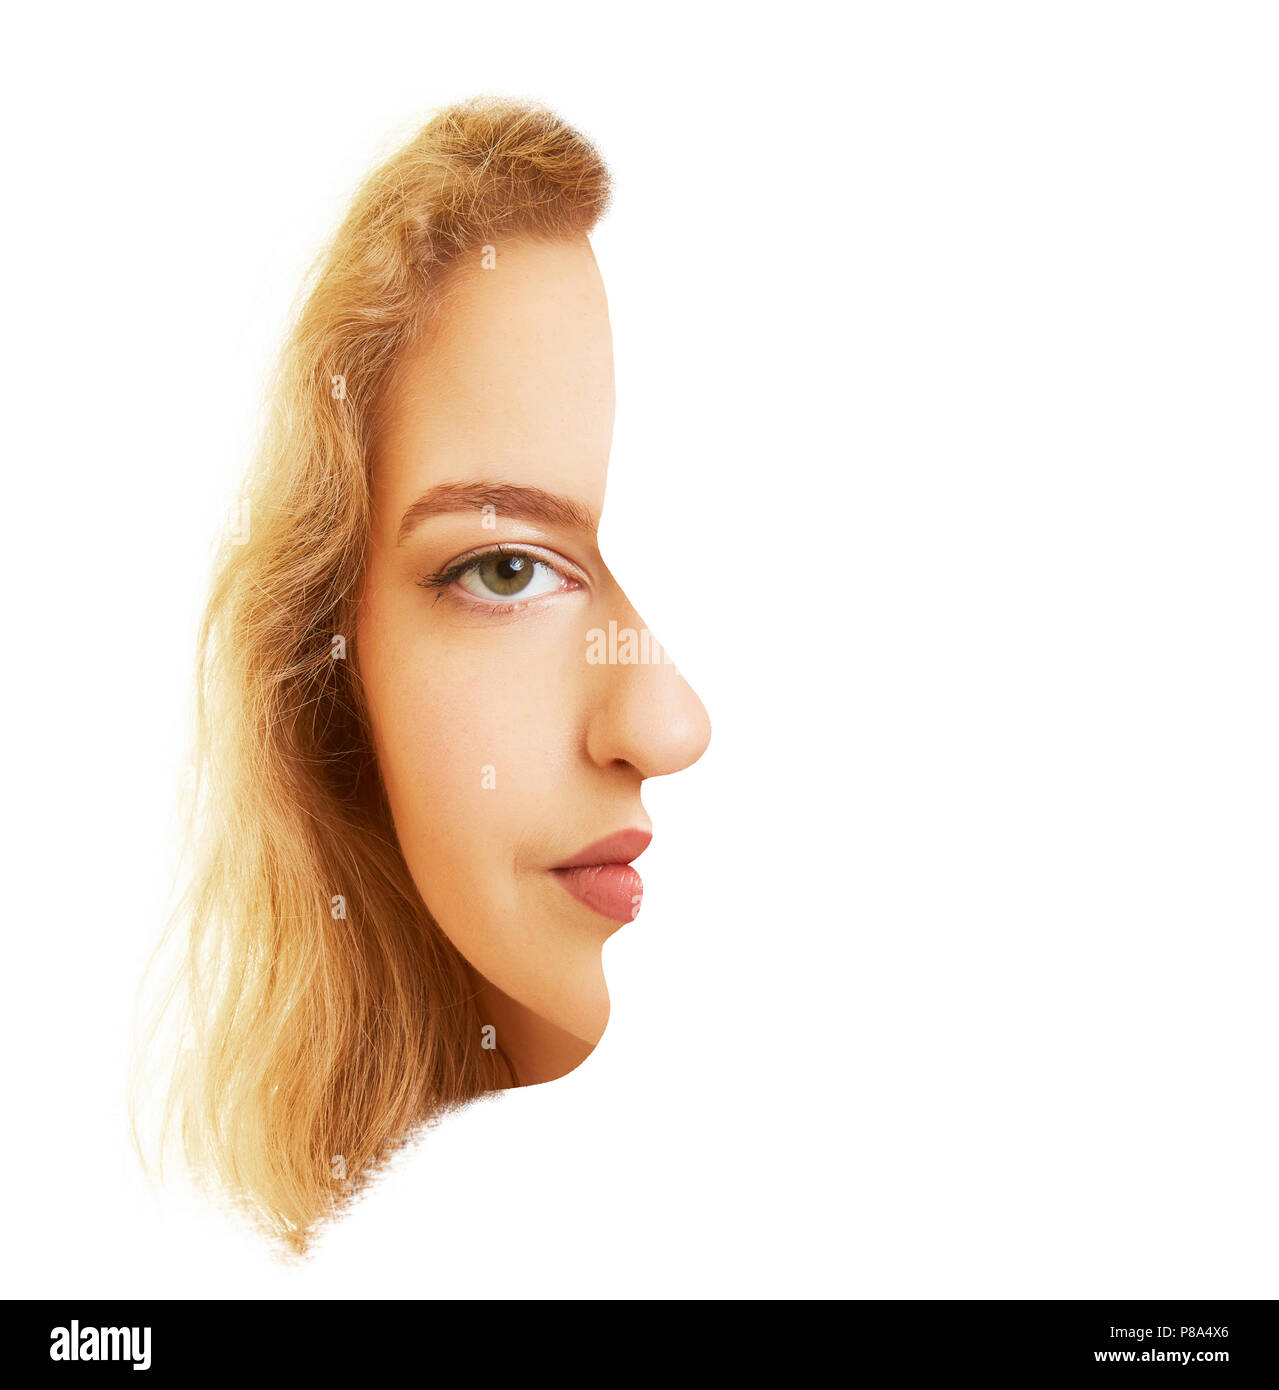 Un volto di donna con testa e lateralmente come una surreale illusione ottica Foto Stock